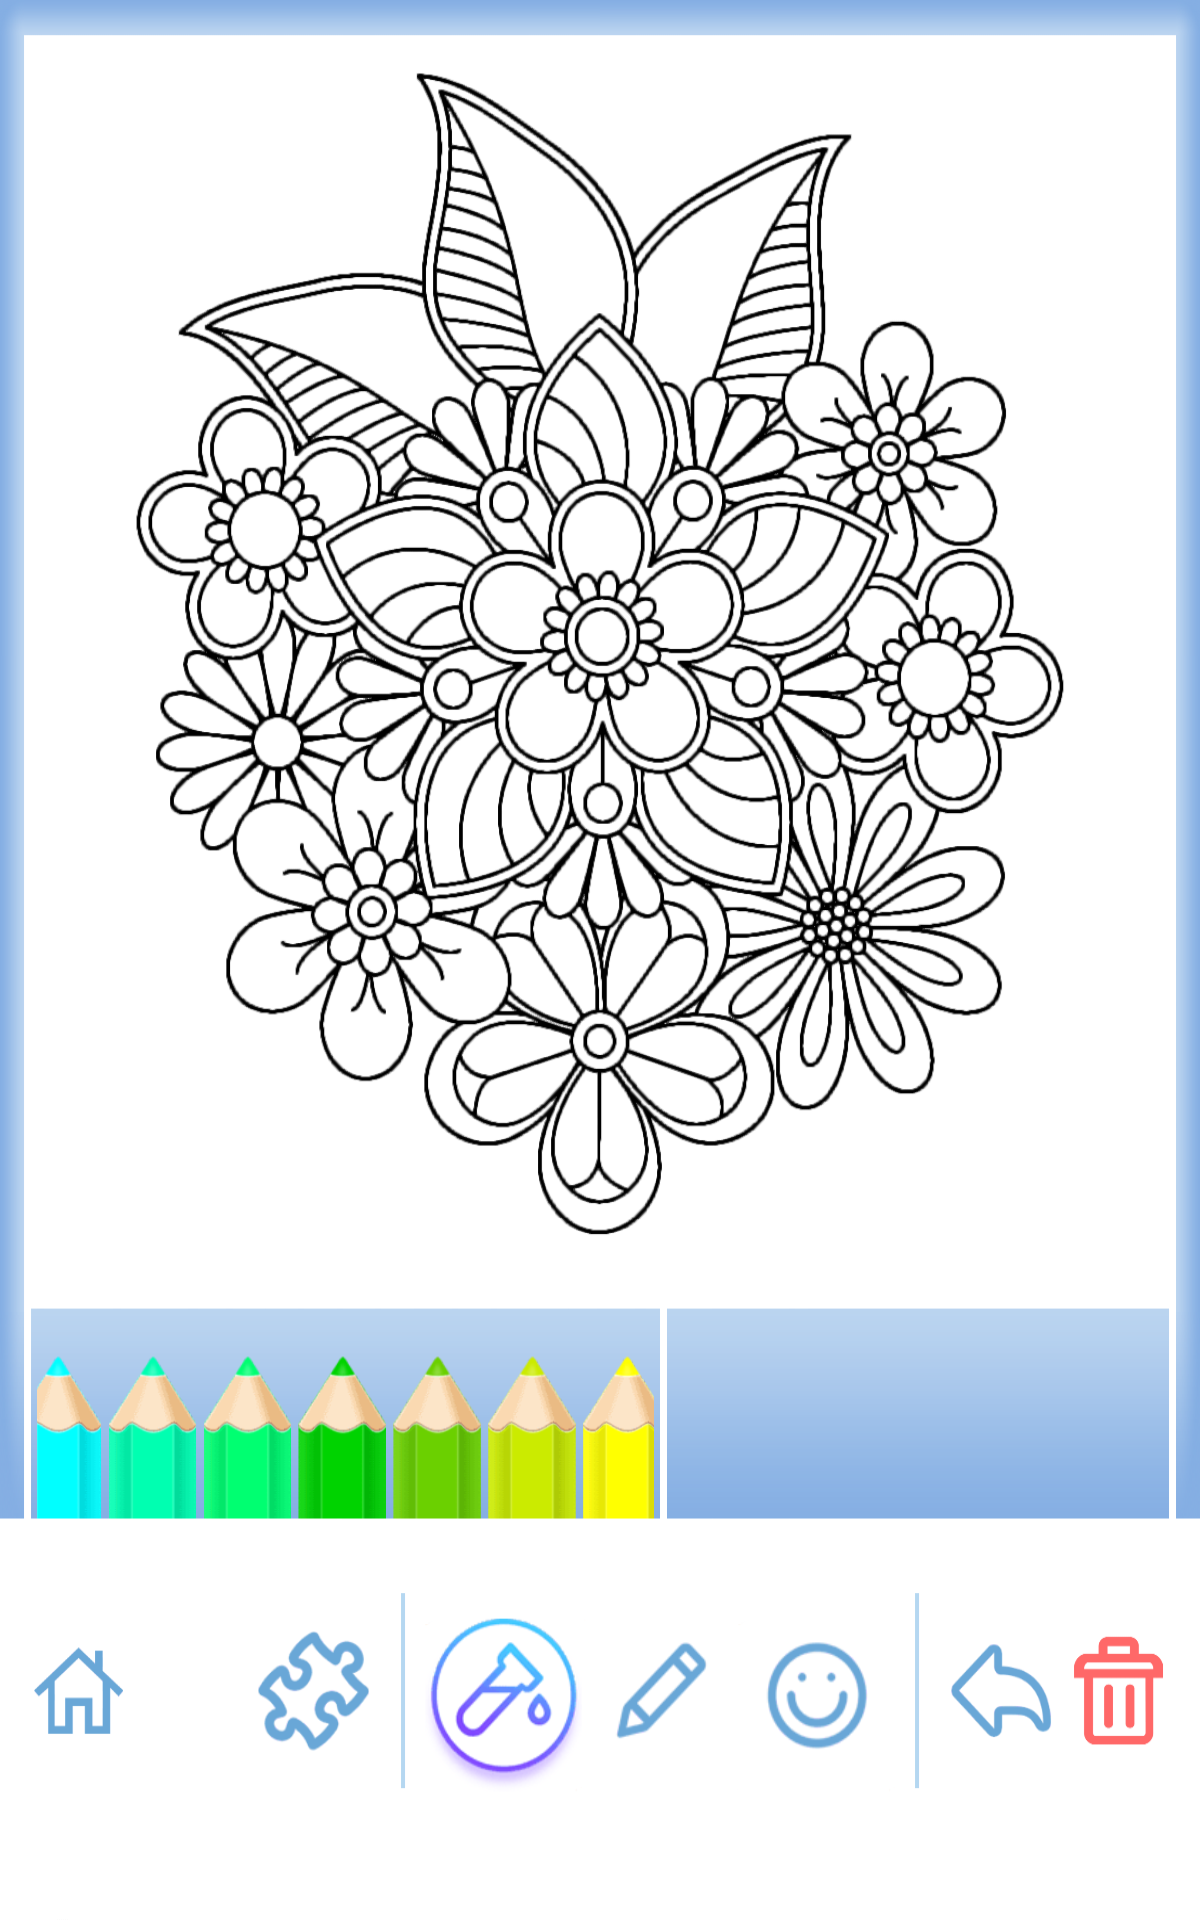 無料で「花の曼荼羅のぬりえブック」アプリの最新版 APK7.7.0をダウンロードー Android用「花の曼荼羅のぬりえブック APK」の最新